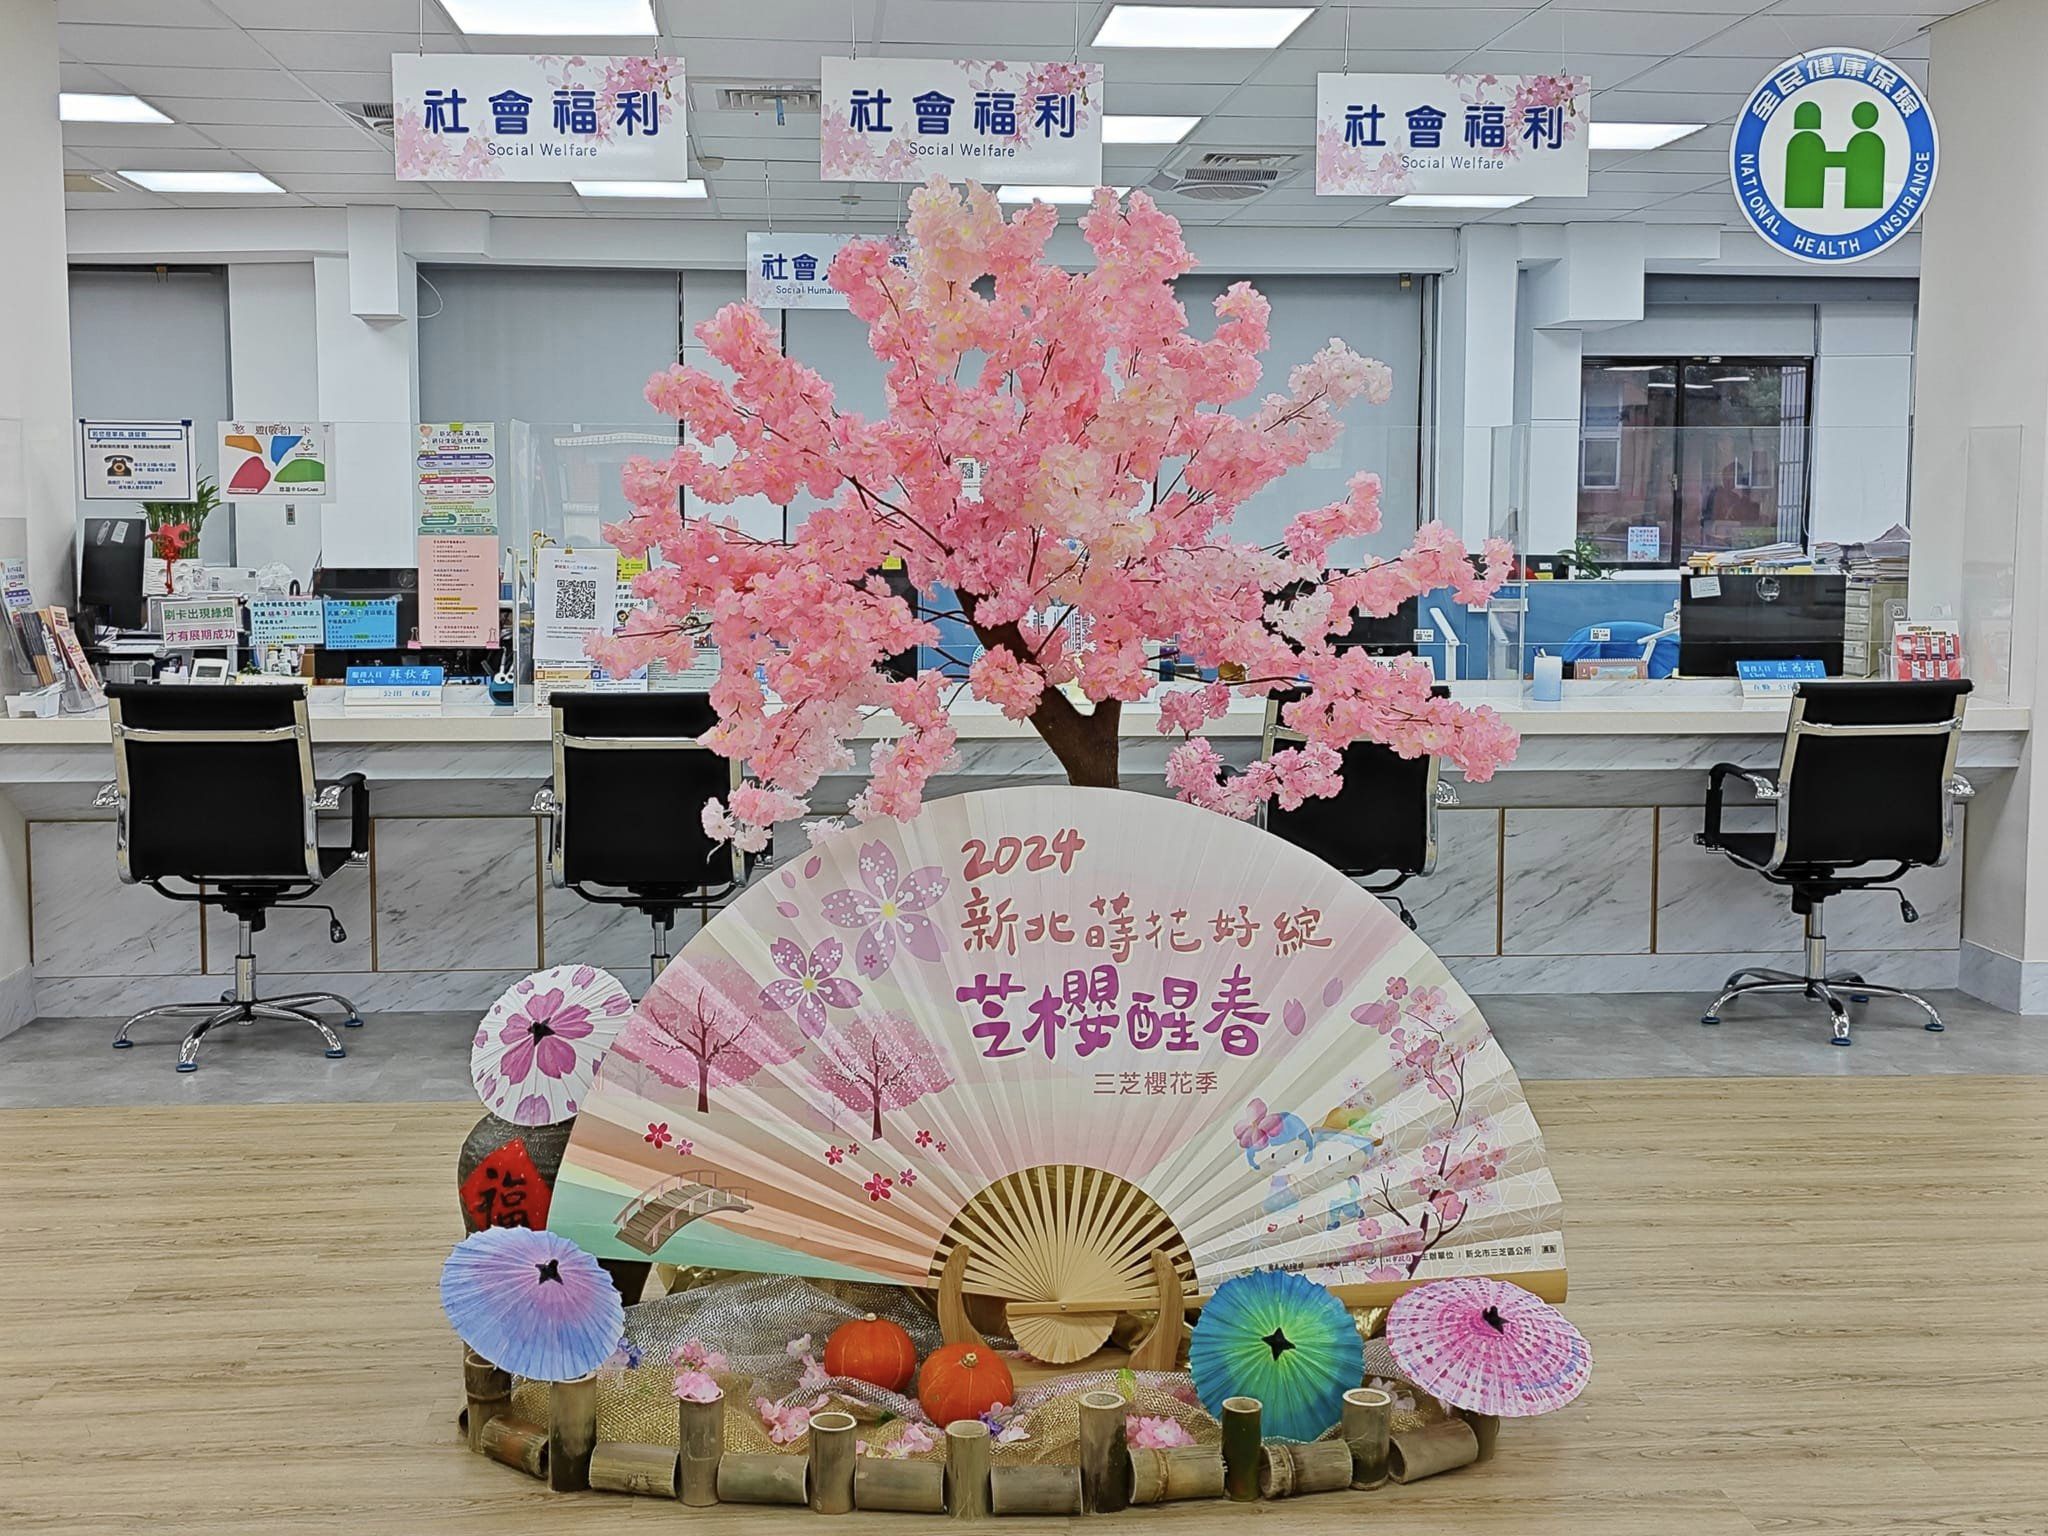 櫻花季公所大樓櫻花布置